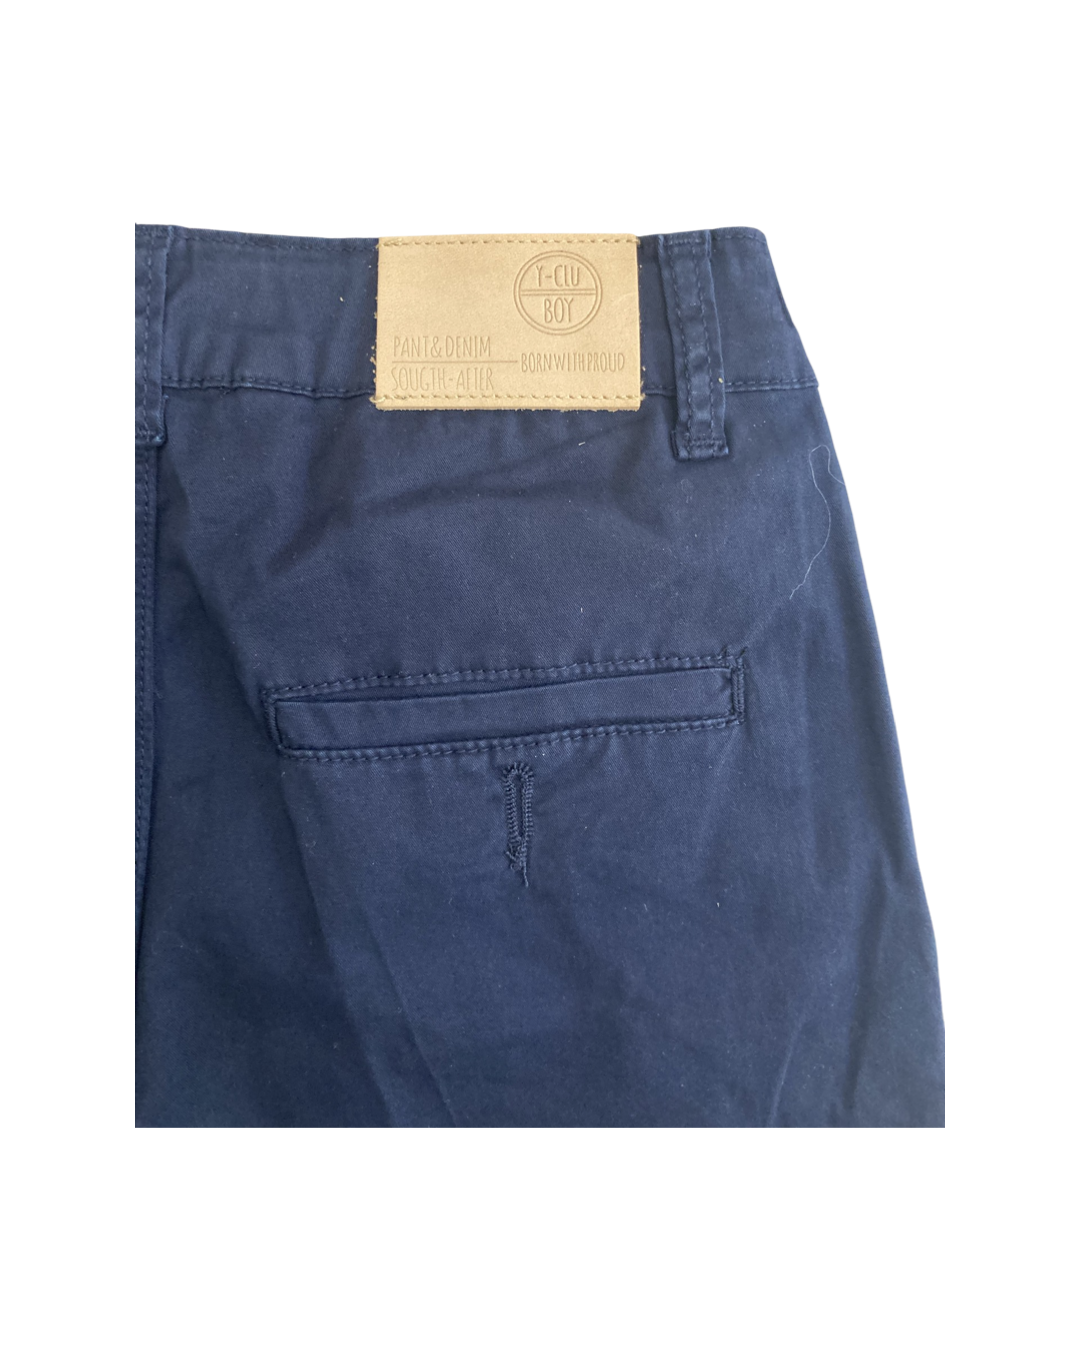 pantalone , Pantalone corto Navy per Ragazzo da 8anni a 16anni Y-Clu BY9096 - BabyBimbo 0-16, abbigliamento bambini